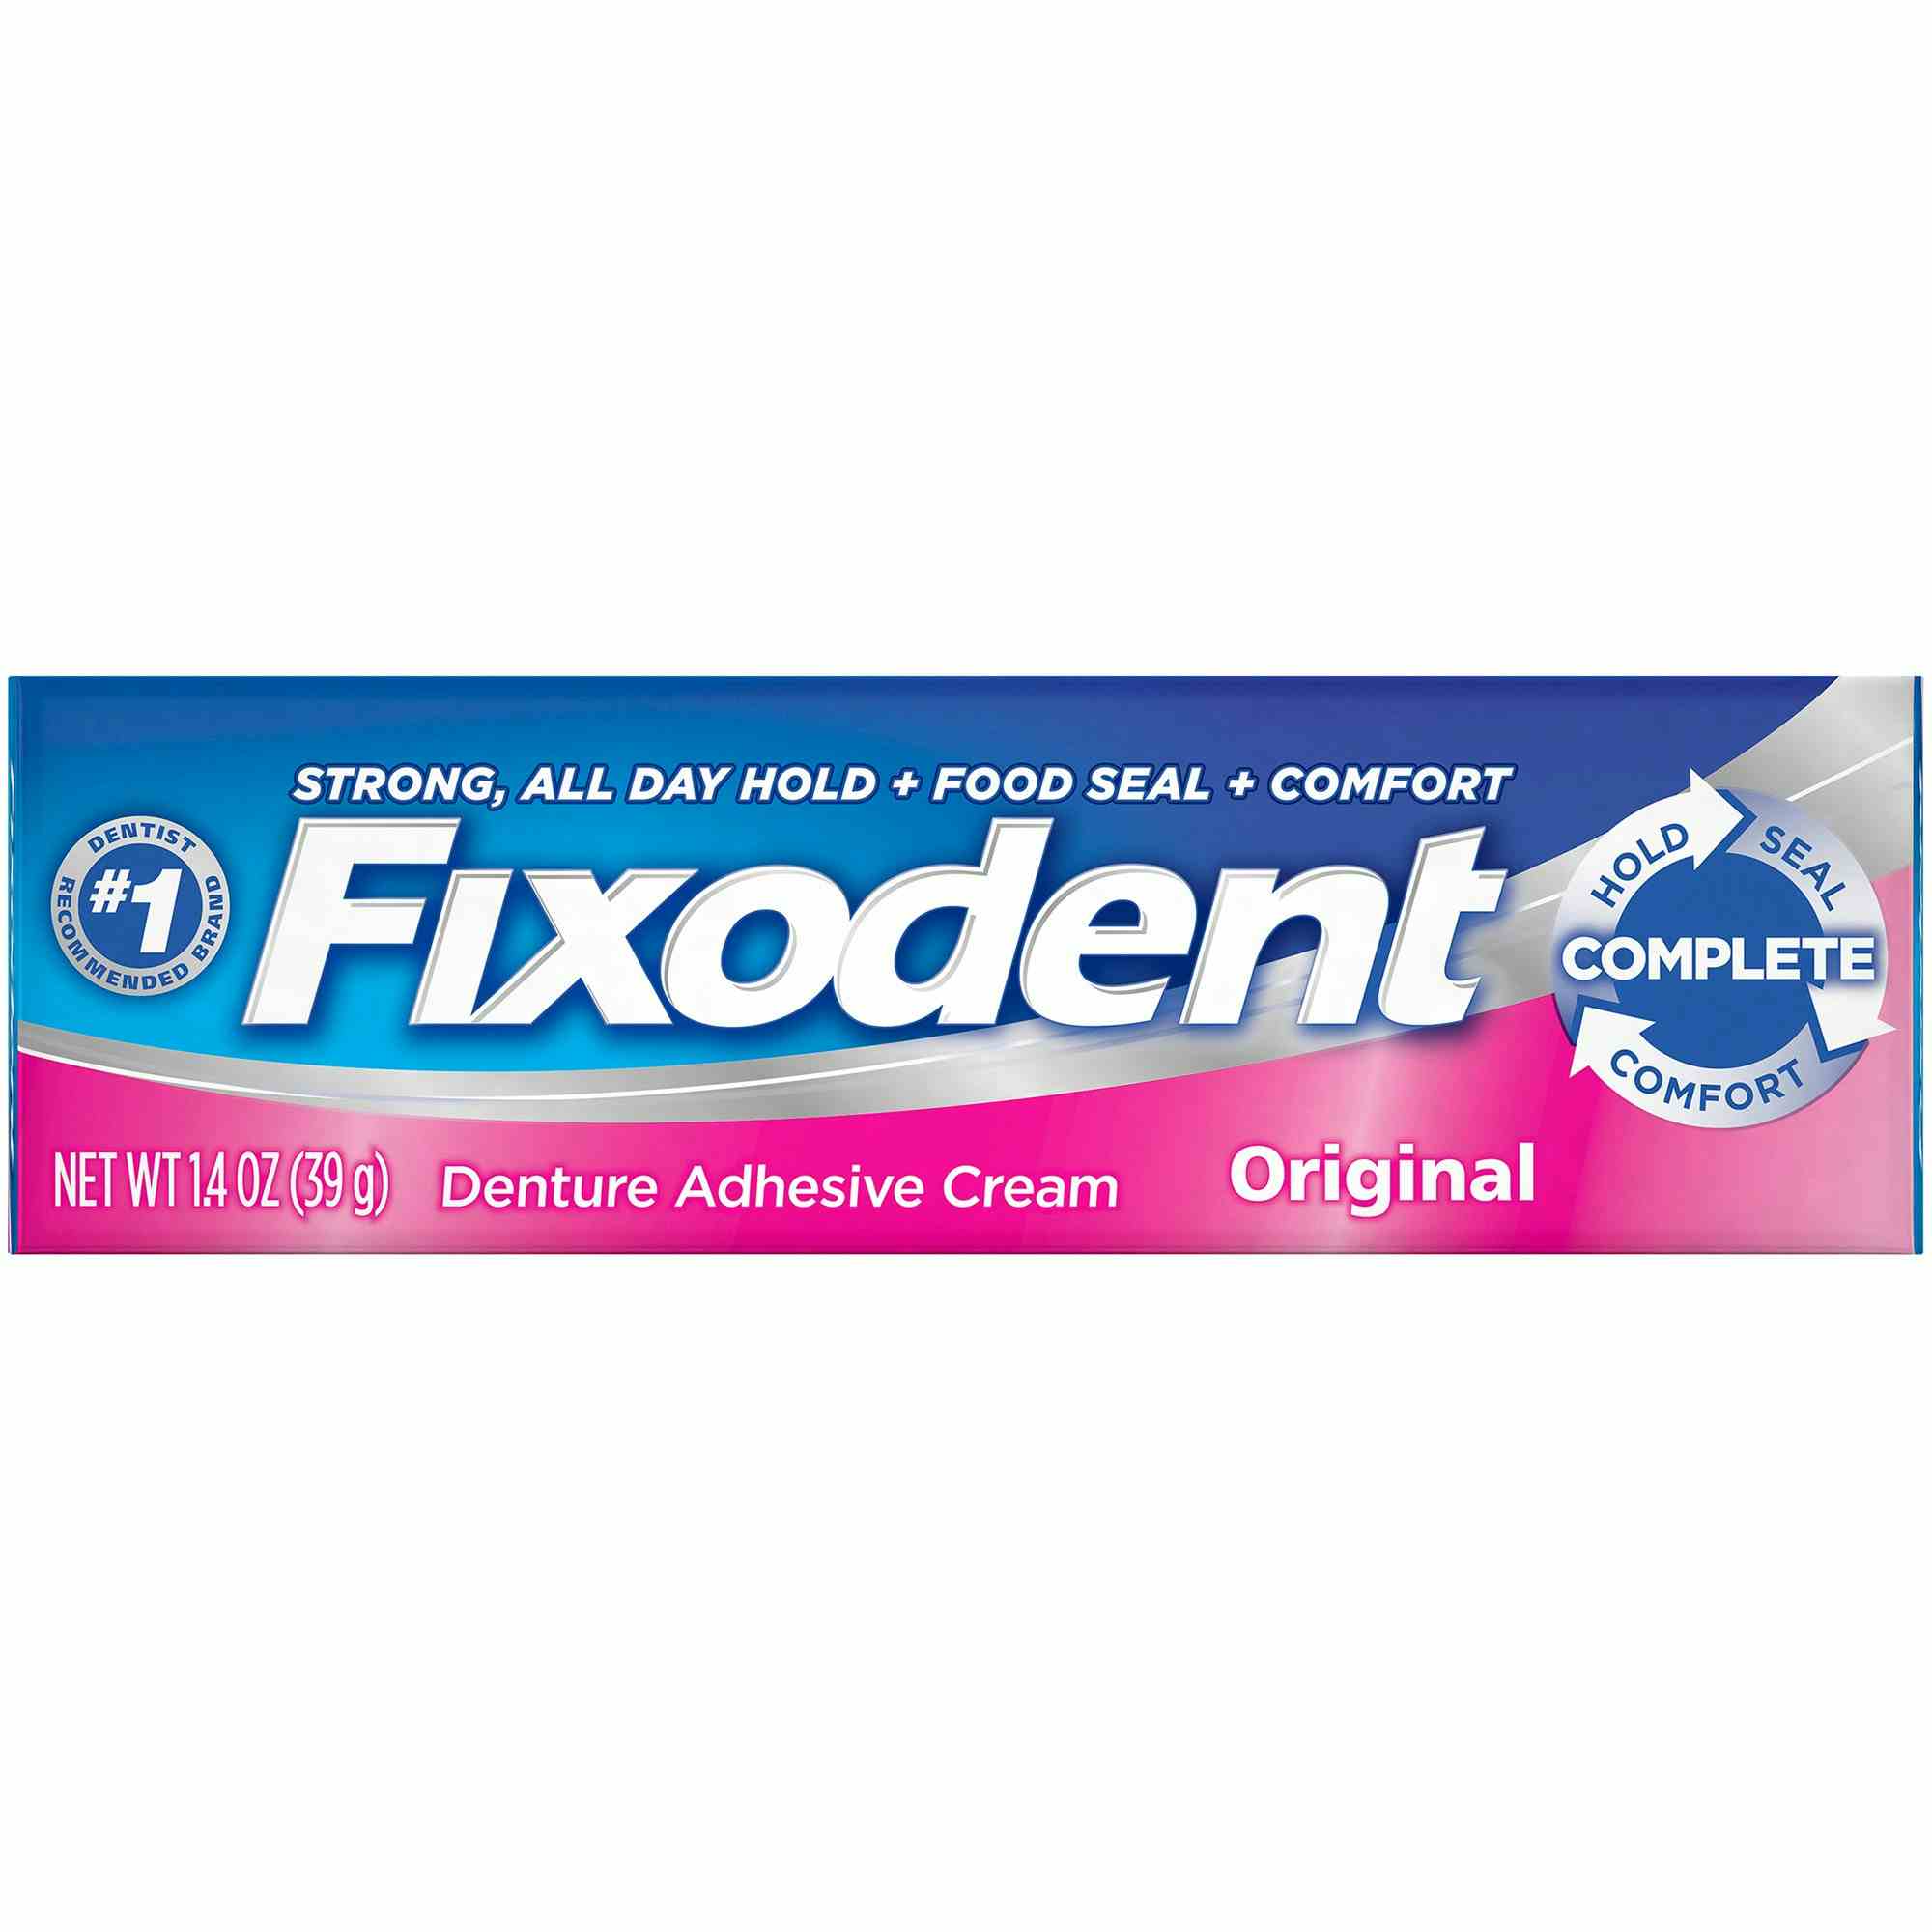 Fixodent Original Denture Adhesive Cream, 00076660300385, 1.4 oz. - 1 Each